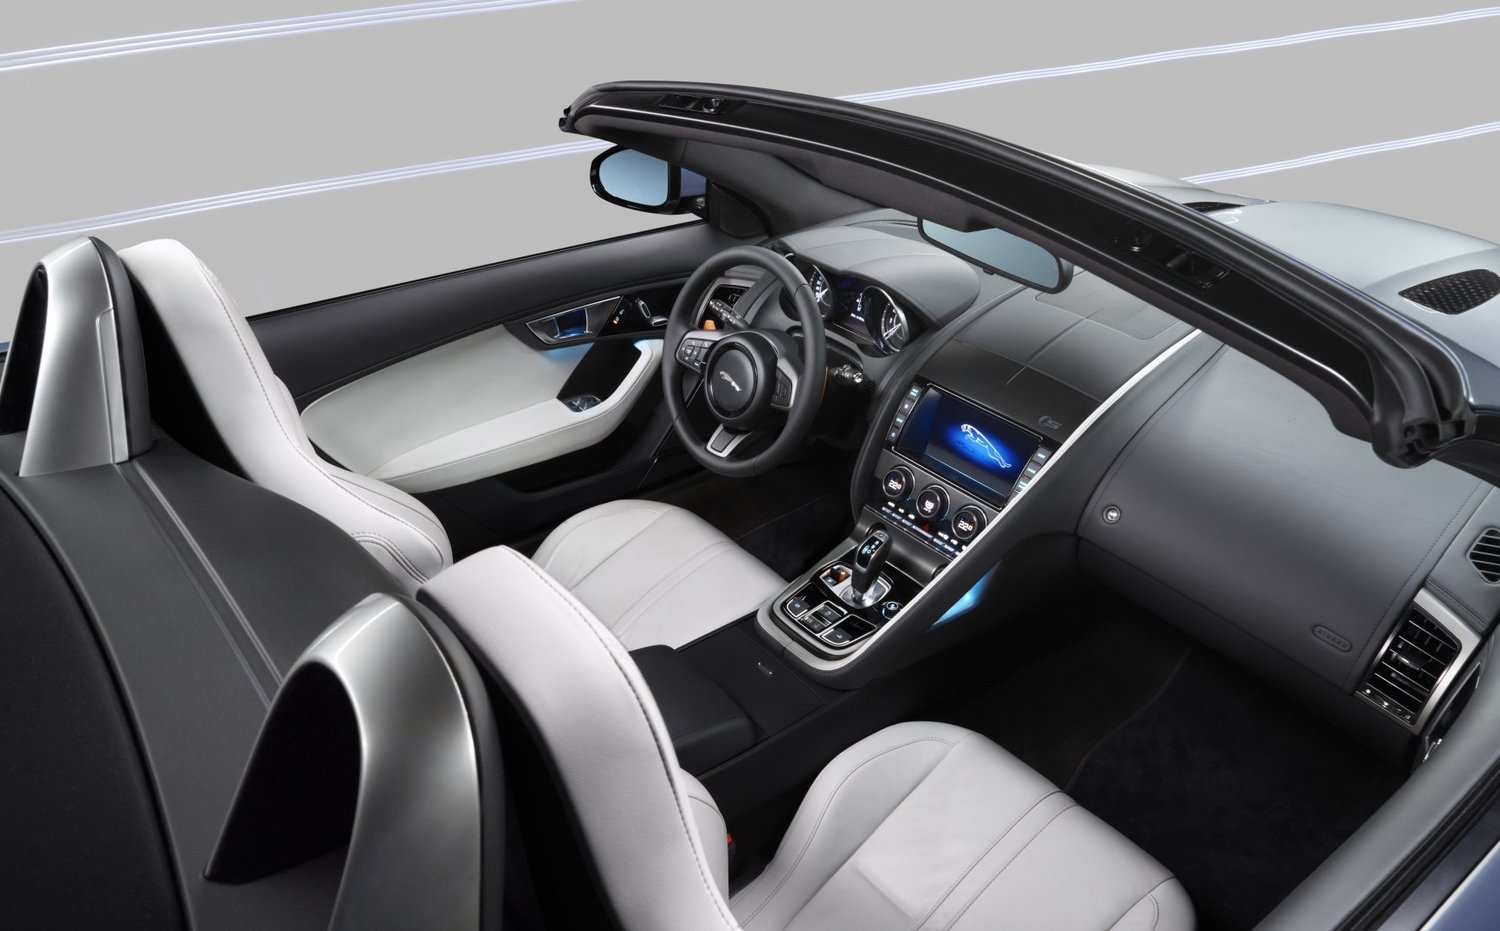 кабриолет Jaguar F-Type 2013 - 2016г выпуска модификация 3.0 AT (380 л.с.)